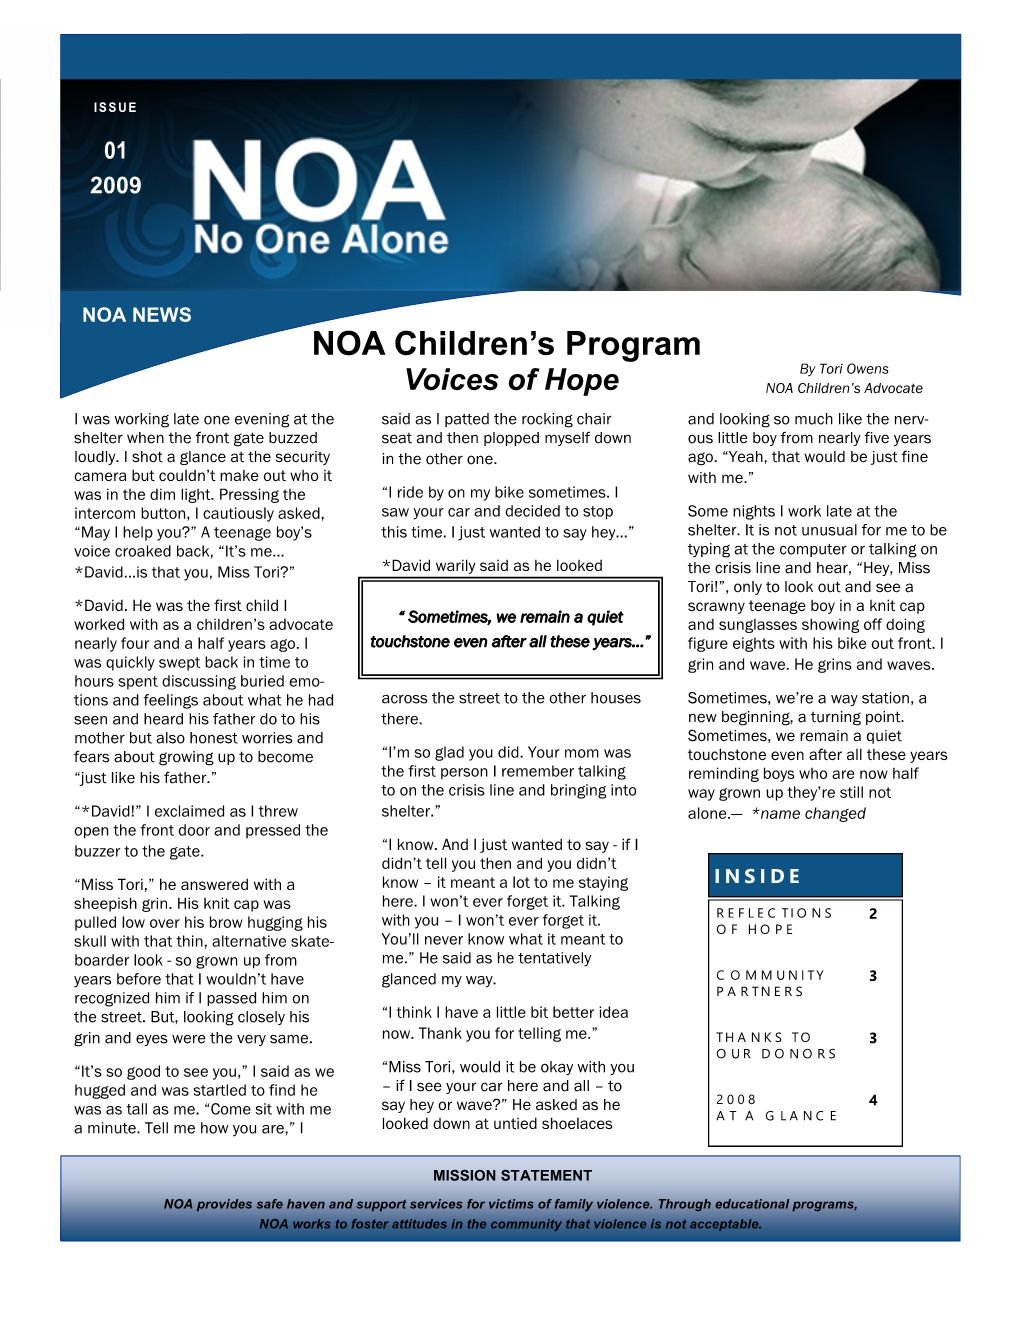 NOA Children's Program